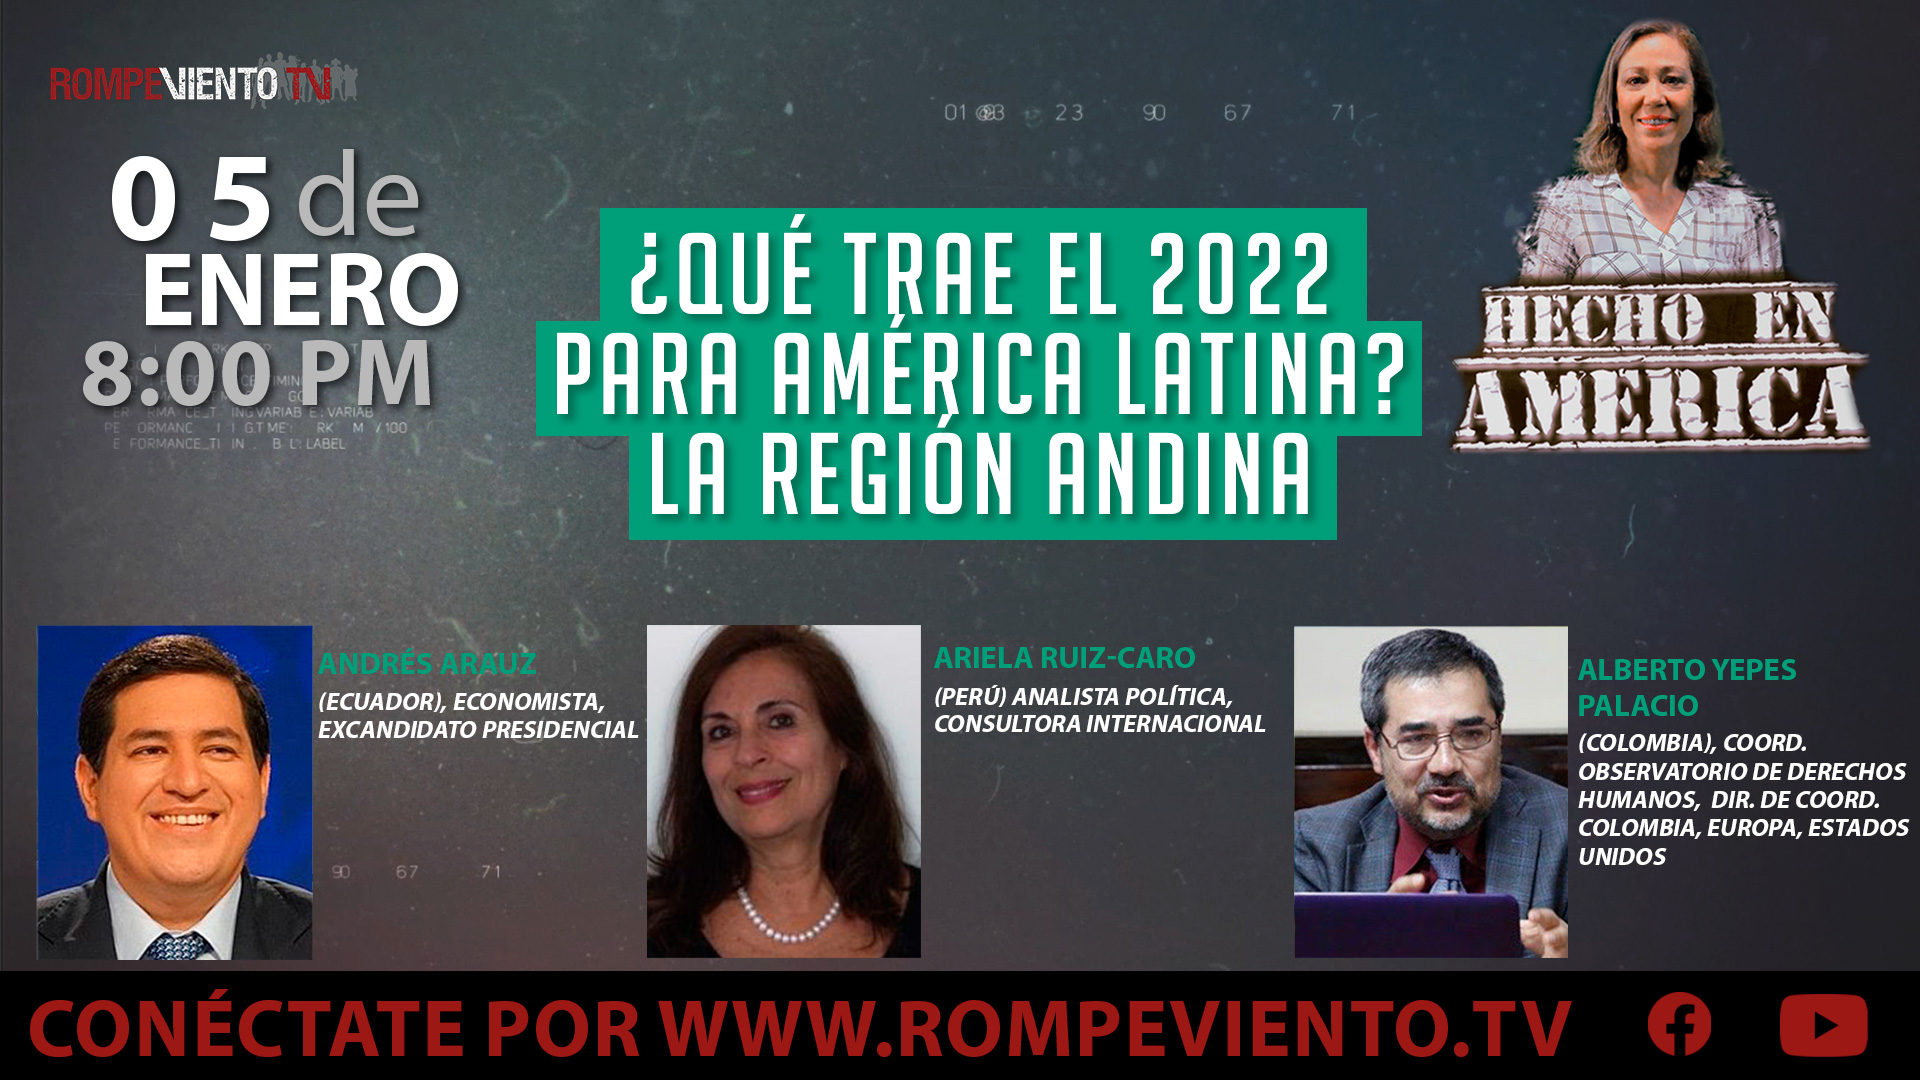 ¿Qué trae el 2022 para América Latina? La región andina - Hecho en América